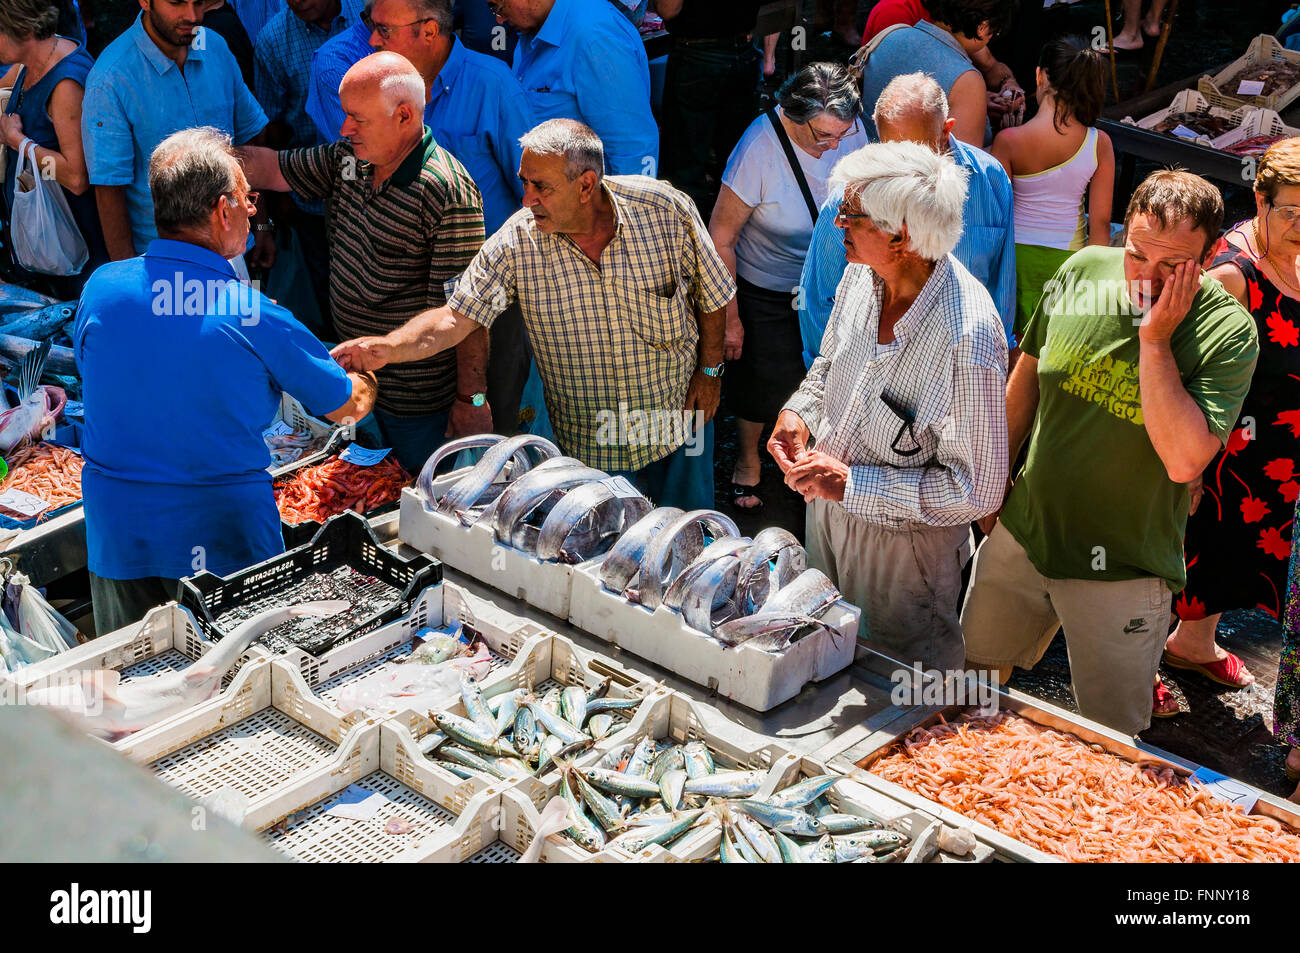 Vendeurs et acheteurs sur le célèbre marché aux poissons de Catane. Plus d'attractions folkloriques de la ville de Catane, Sicile, Italie Banque D'Images